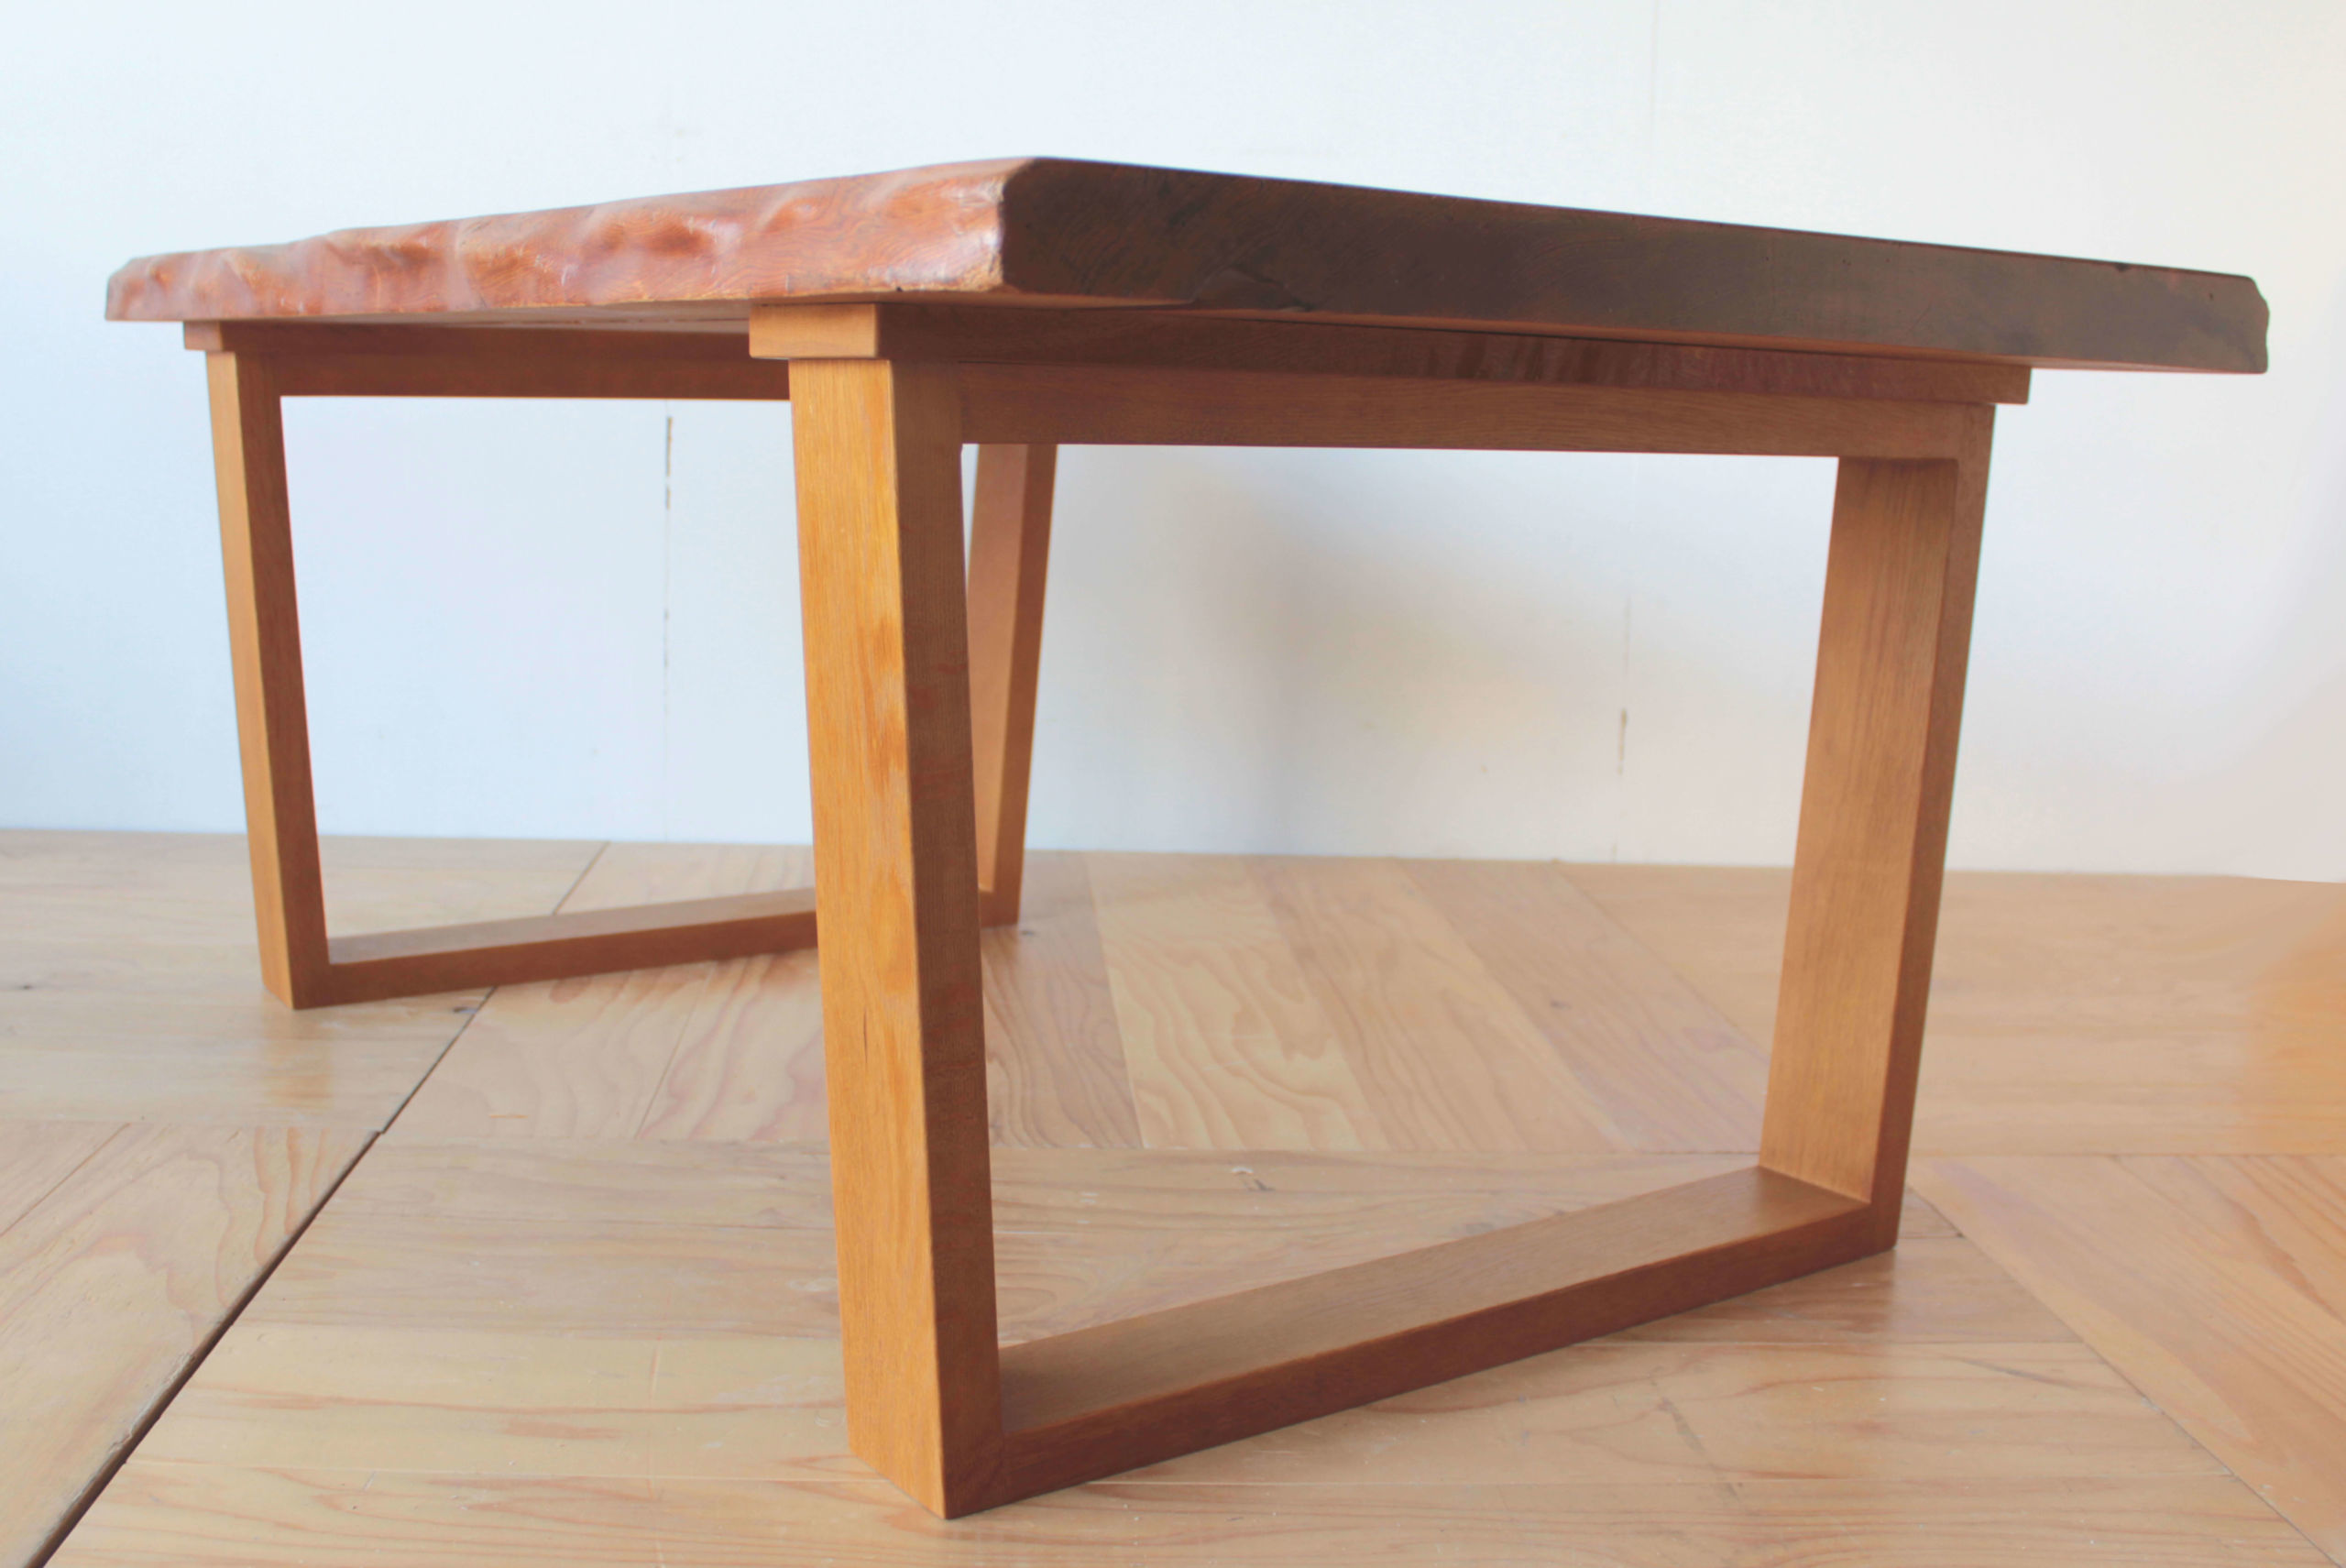 リメイクした屋久杉無垢一枚板のテーブルのロの字型の脚